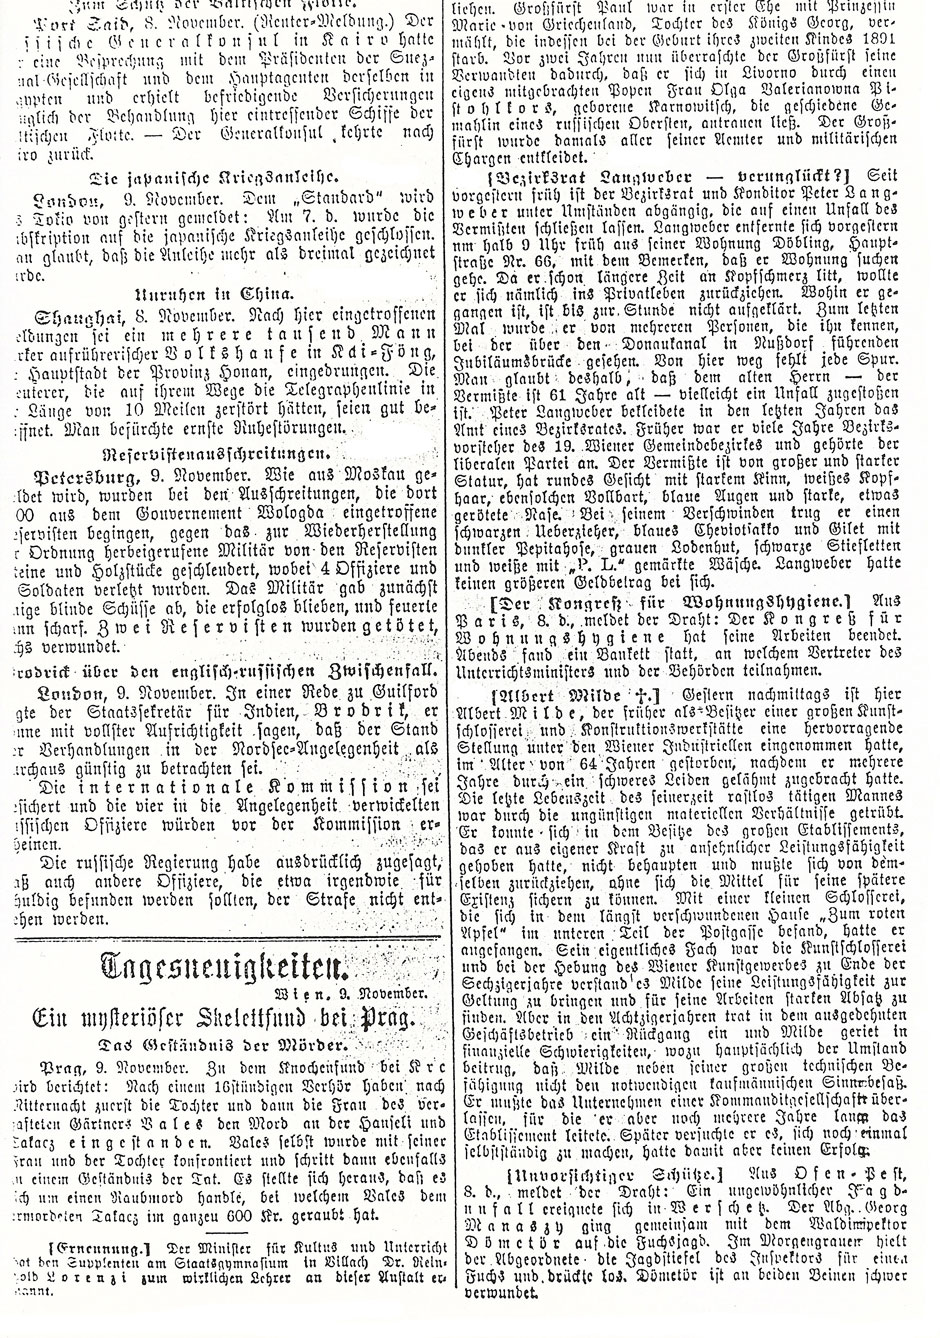 Deutsche Zeitung, Christlichsoziales Organ, 9. November 1904; Folgeseite (siehe rechte Spalte)